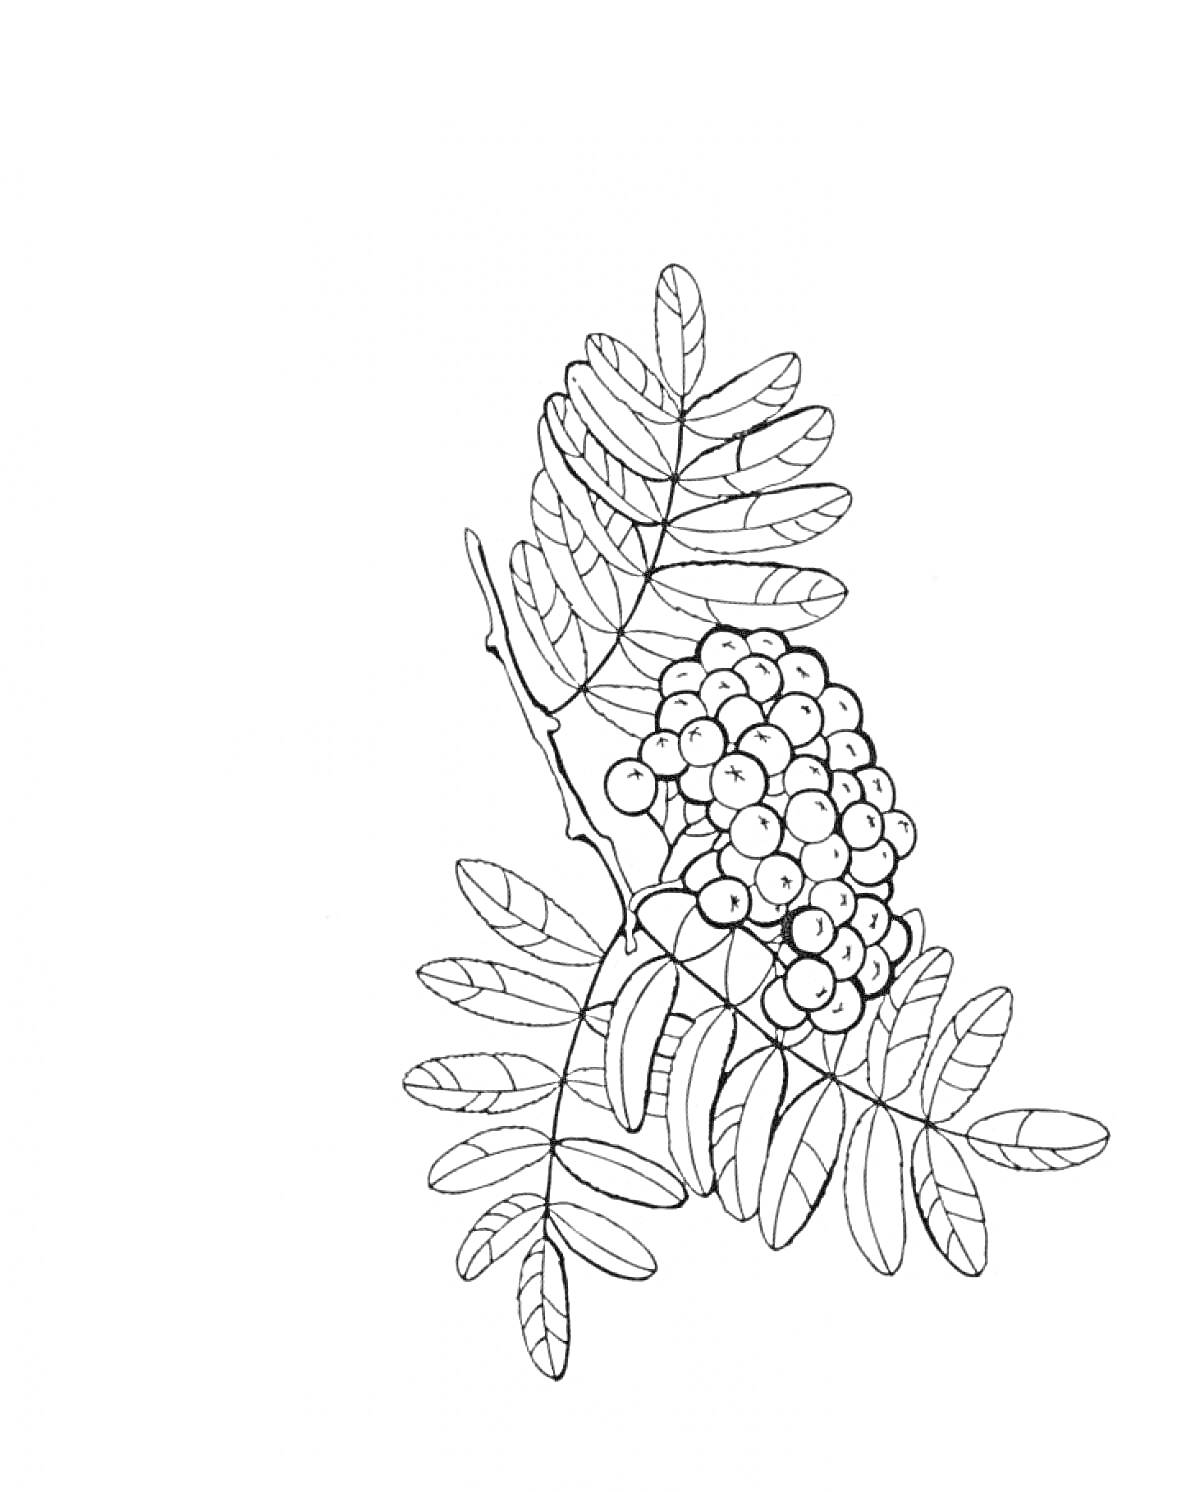 Раскраска Ветка рябины с ягодами на черно-белом контуре, включающая листья и гроздь ягод